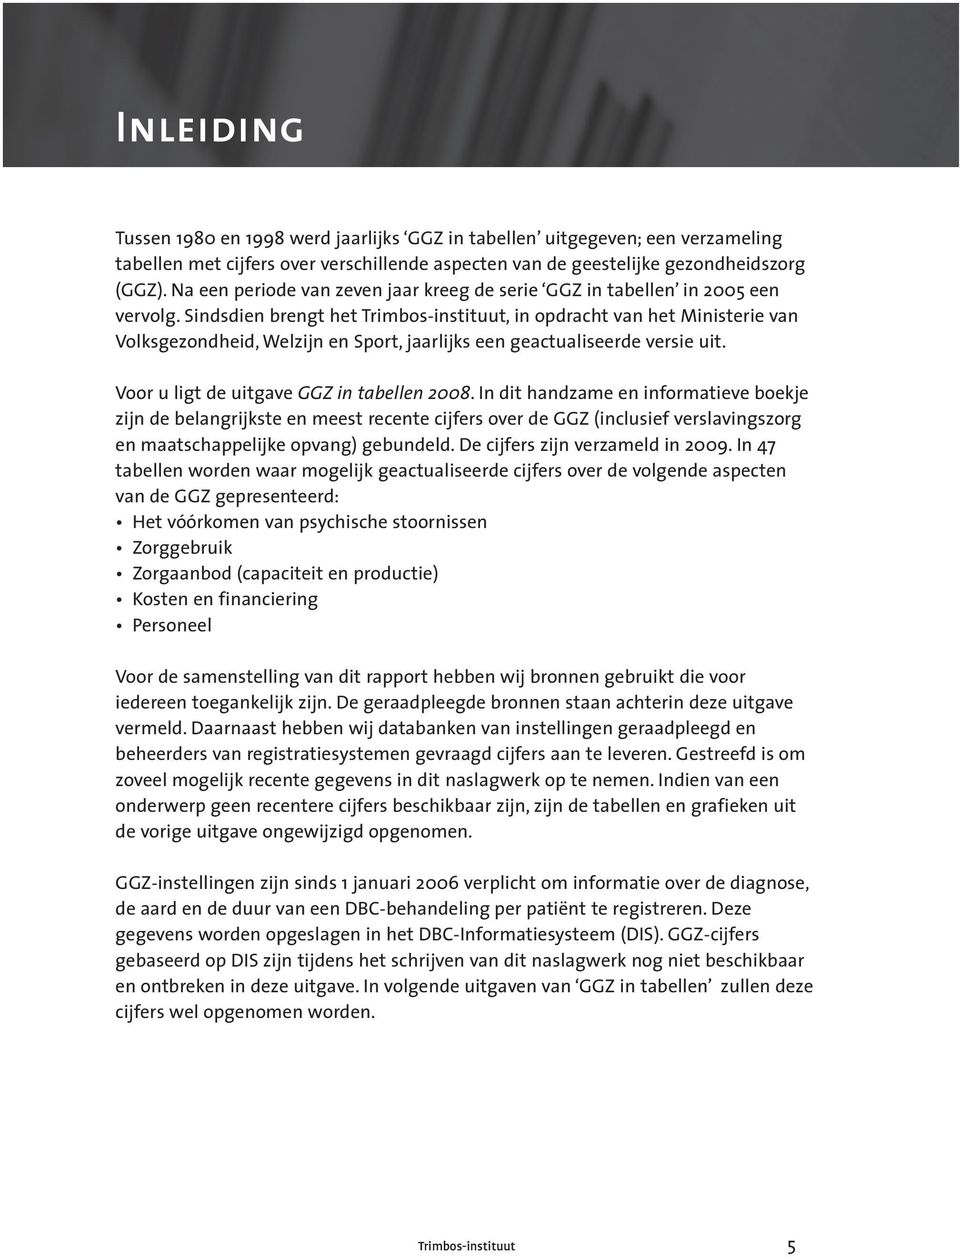 Sindsdien brengt het Trimbos-instituut, in opdracht van het Ministerie van Volksgezondheid, Welzijn en Sport, jaarlijks een geactualiseerde versie uit. Voor u ligt de uitgave GGZ in tabellen 2008.